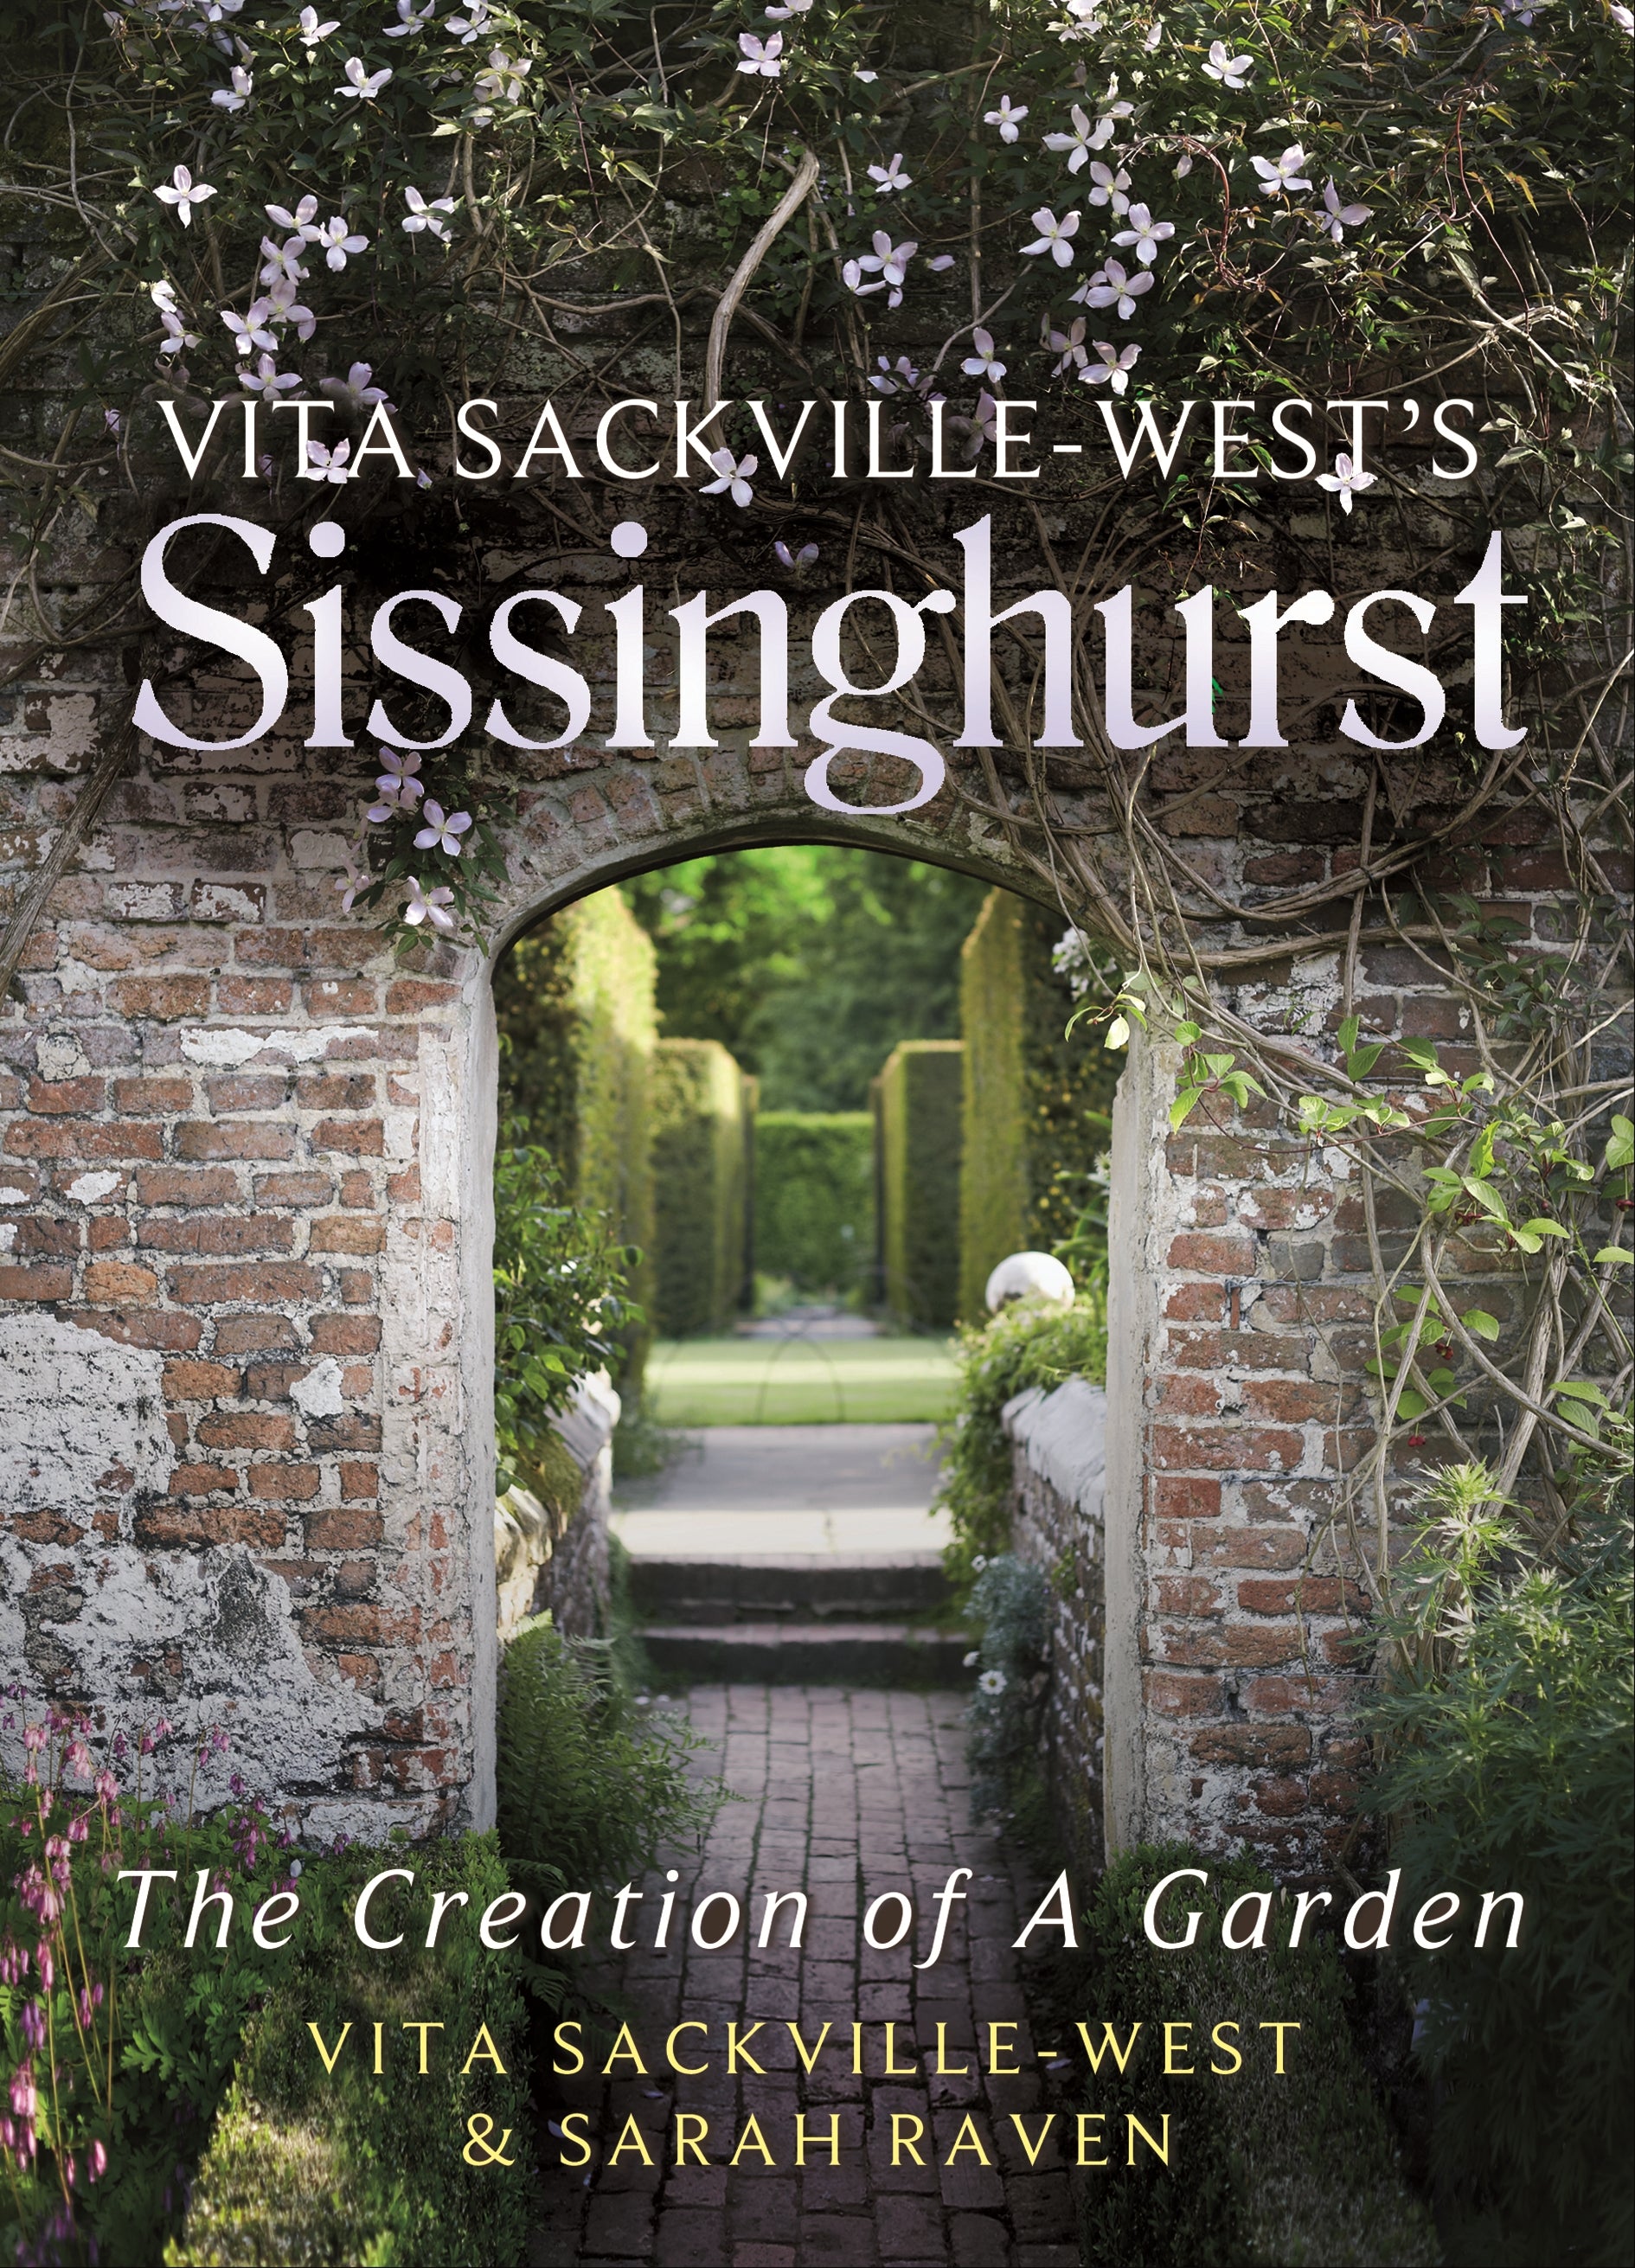 Vita Sackville-West's Sissinghurst by Vita Sackville-West, Sarah Raven